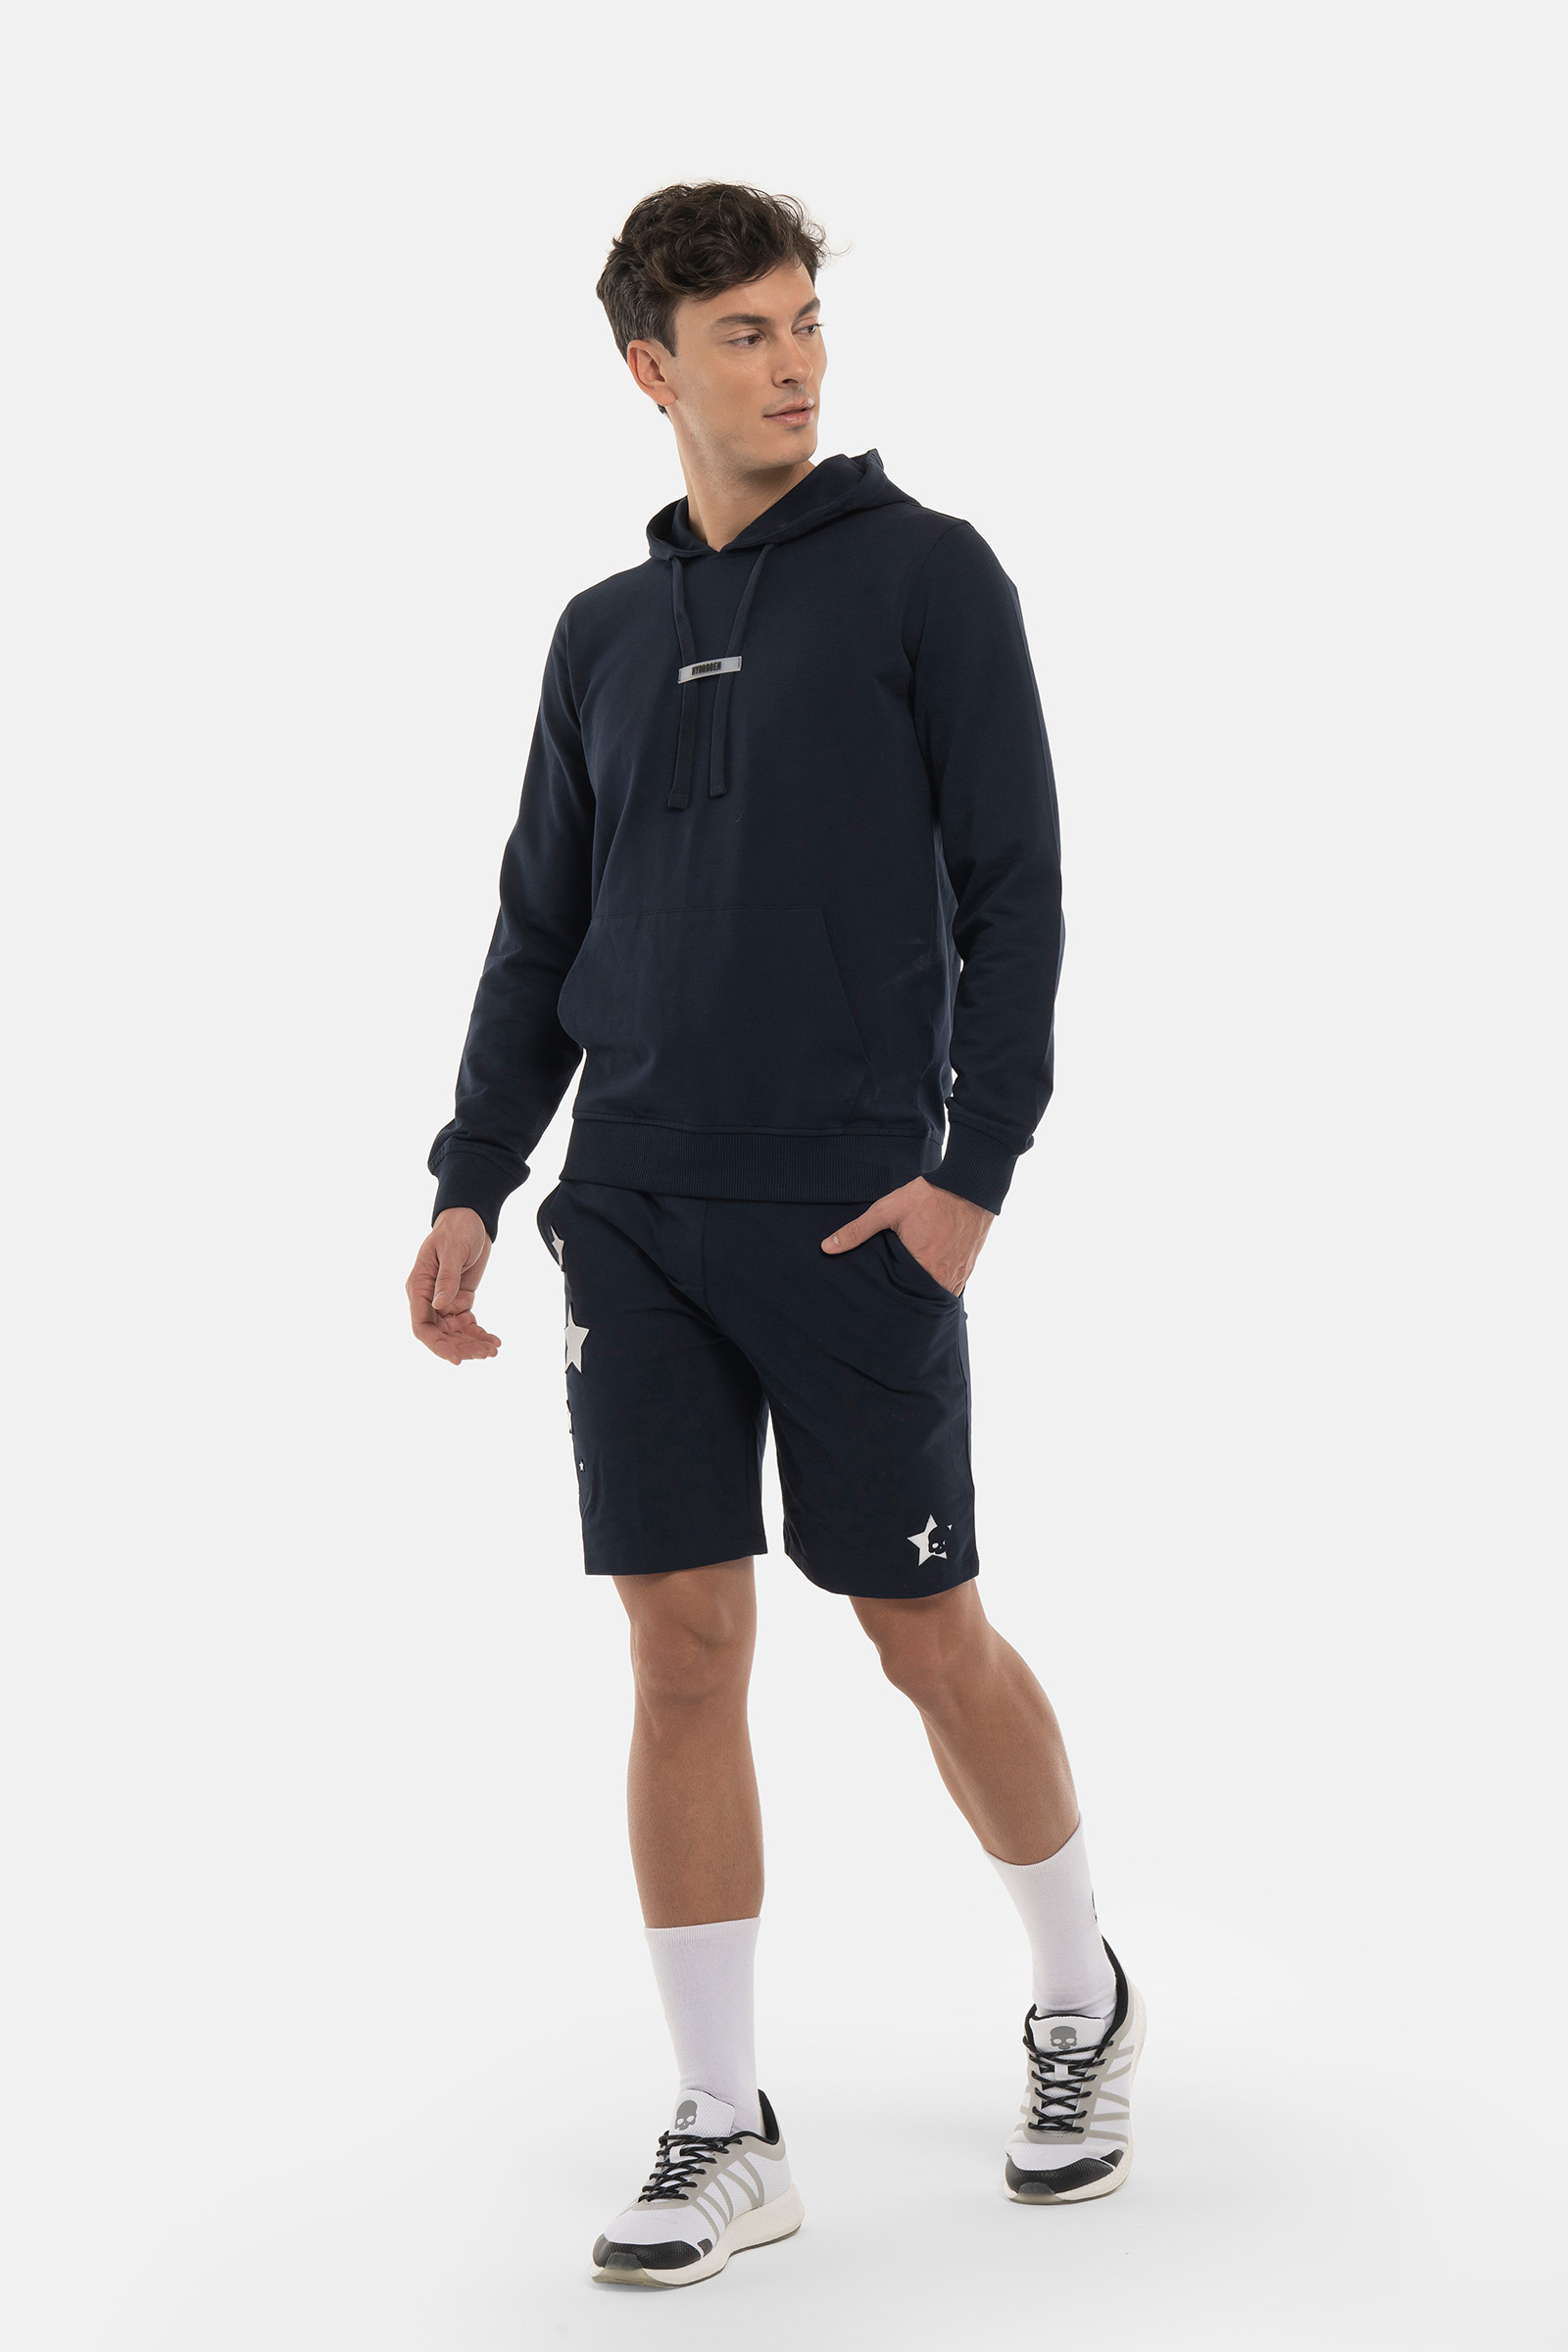 FELPA STARS CON CAPPUCCIO - BLUE - Abbigliamento sportivo | Hydrogen